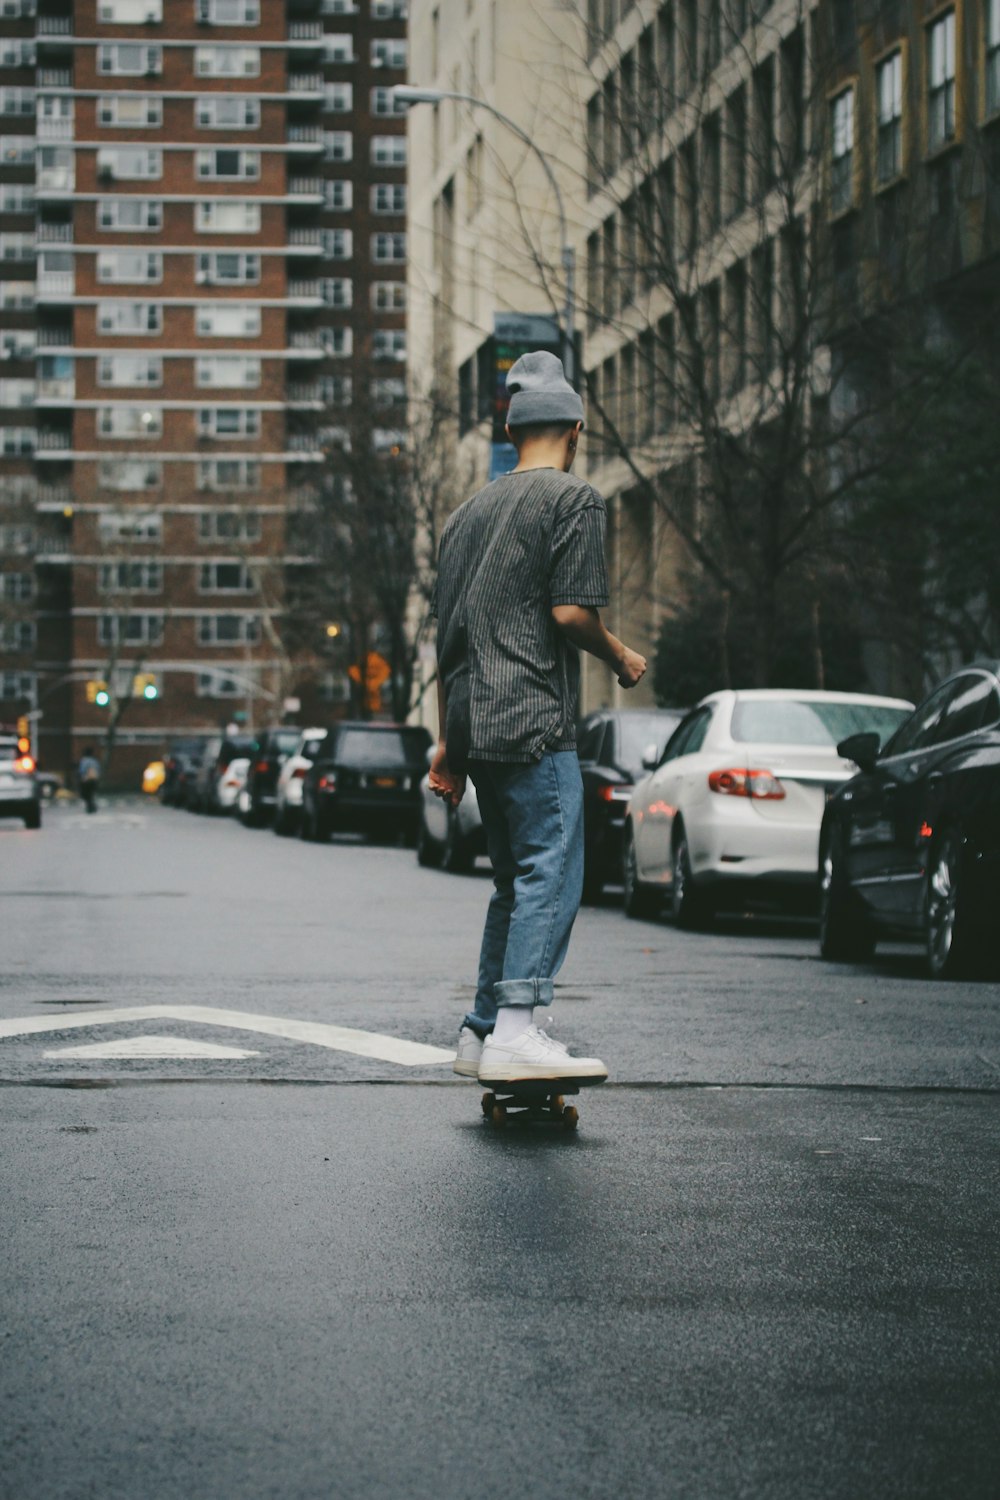 Mann fährt Skateboard in der Nähe eines Hochhauses